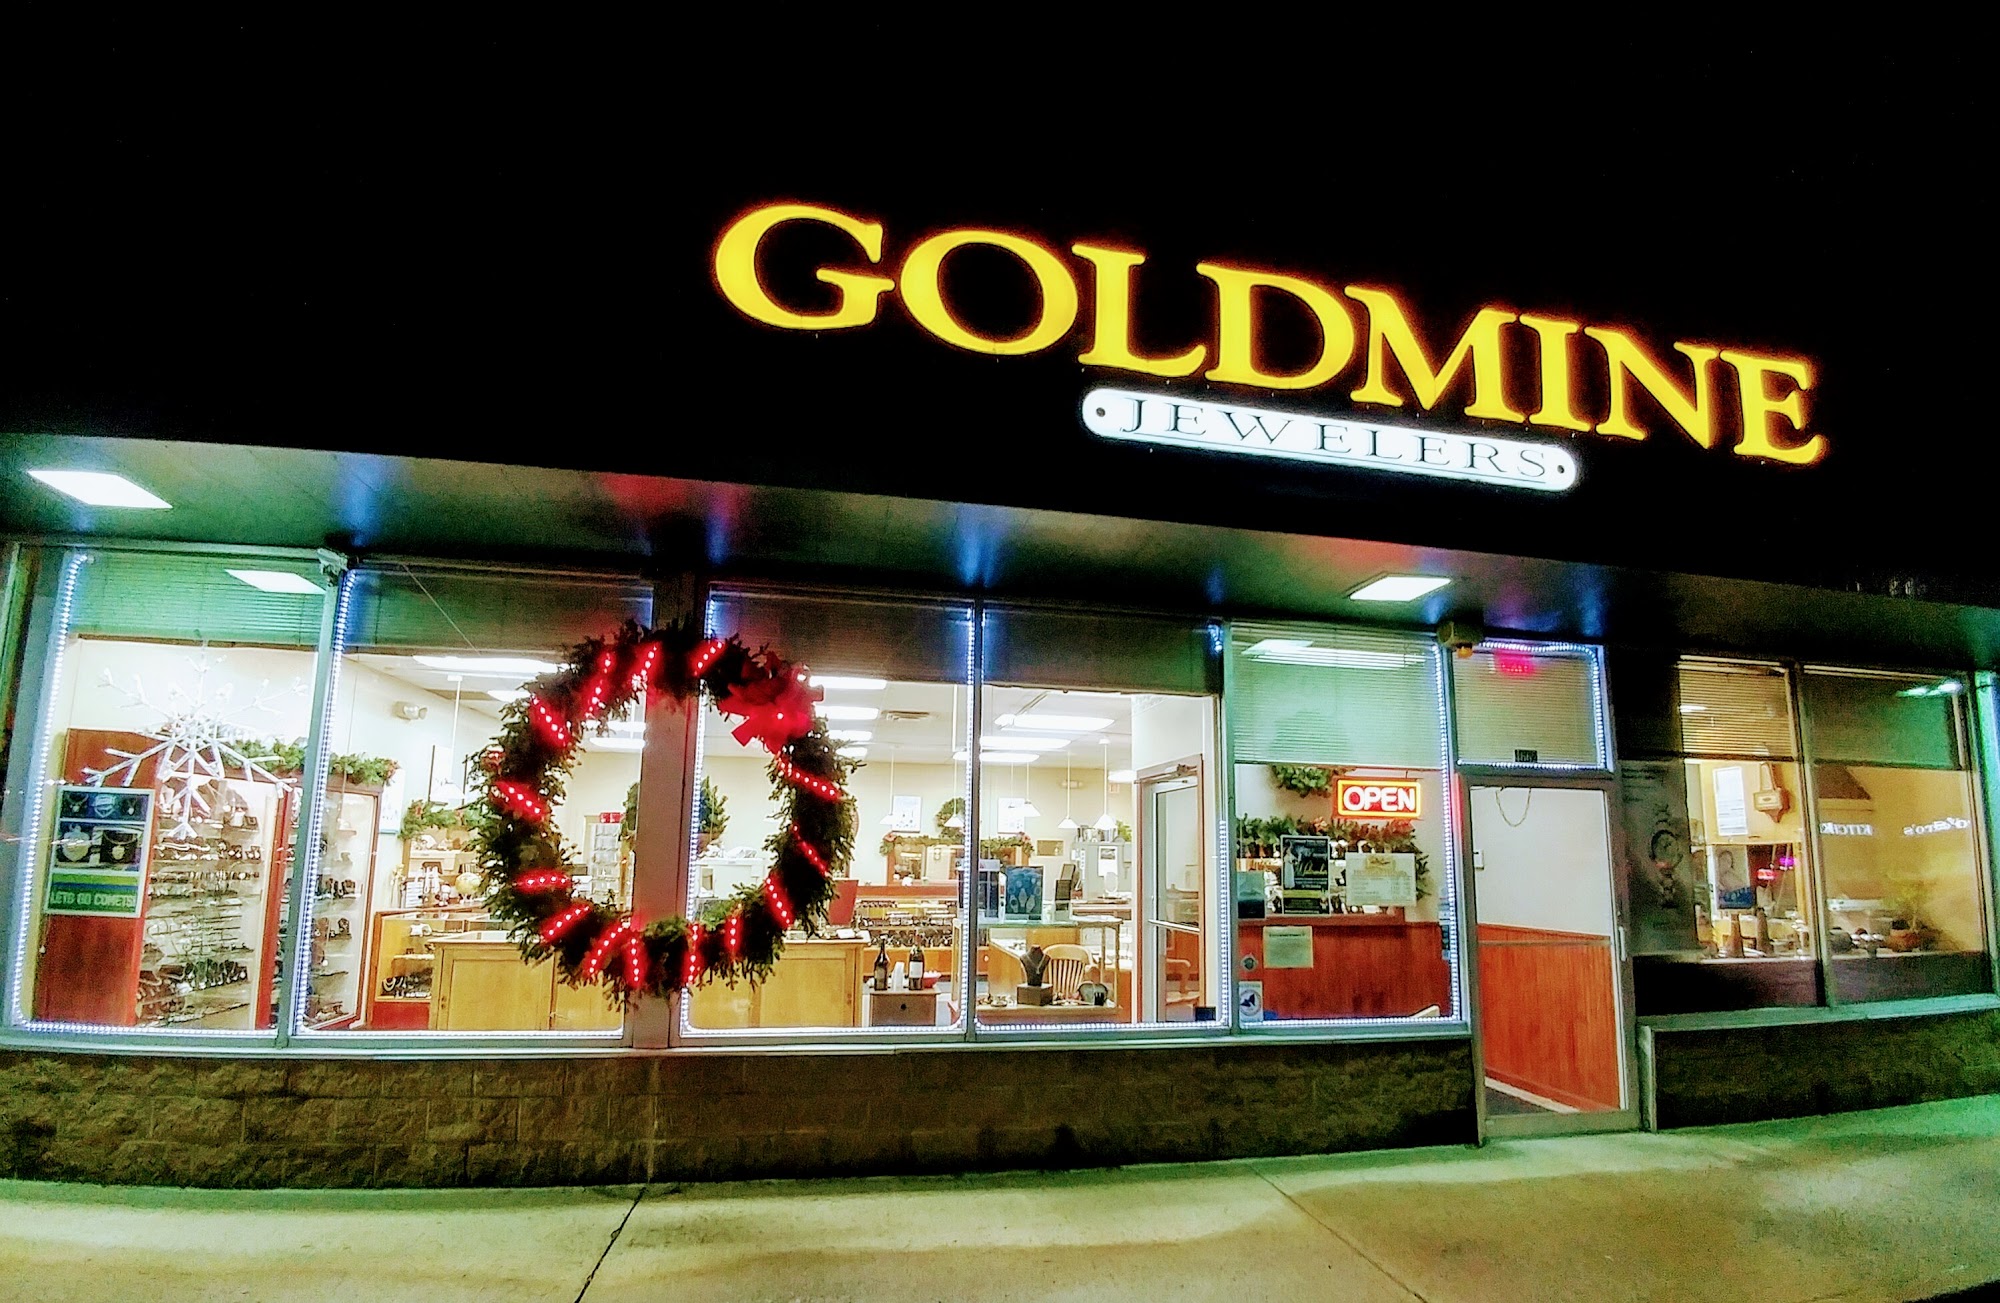 The Goldmine Jewelers 2